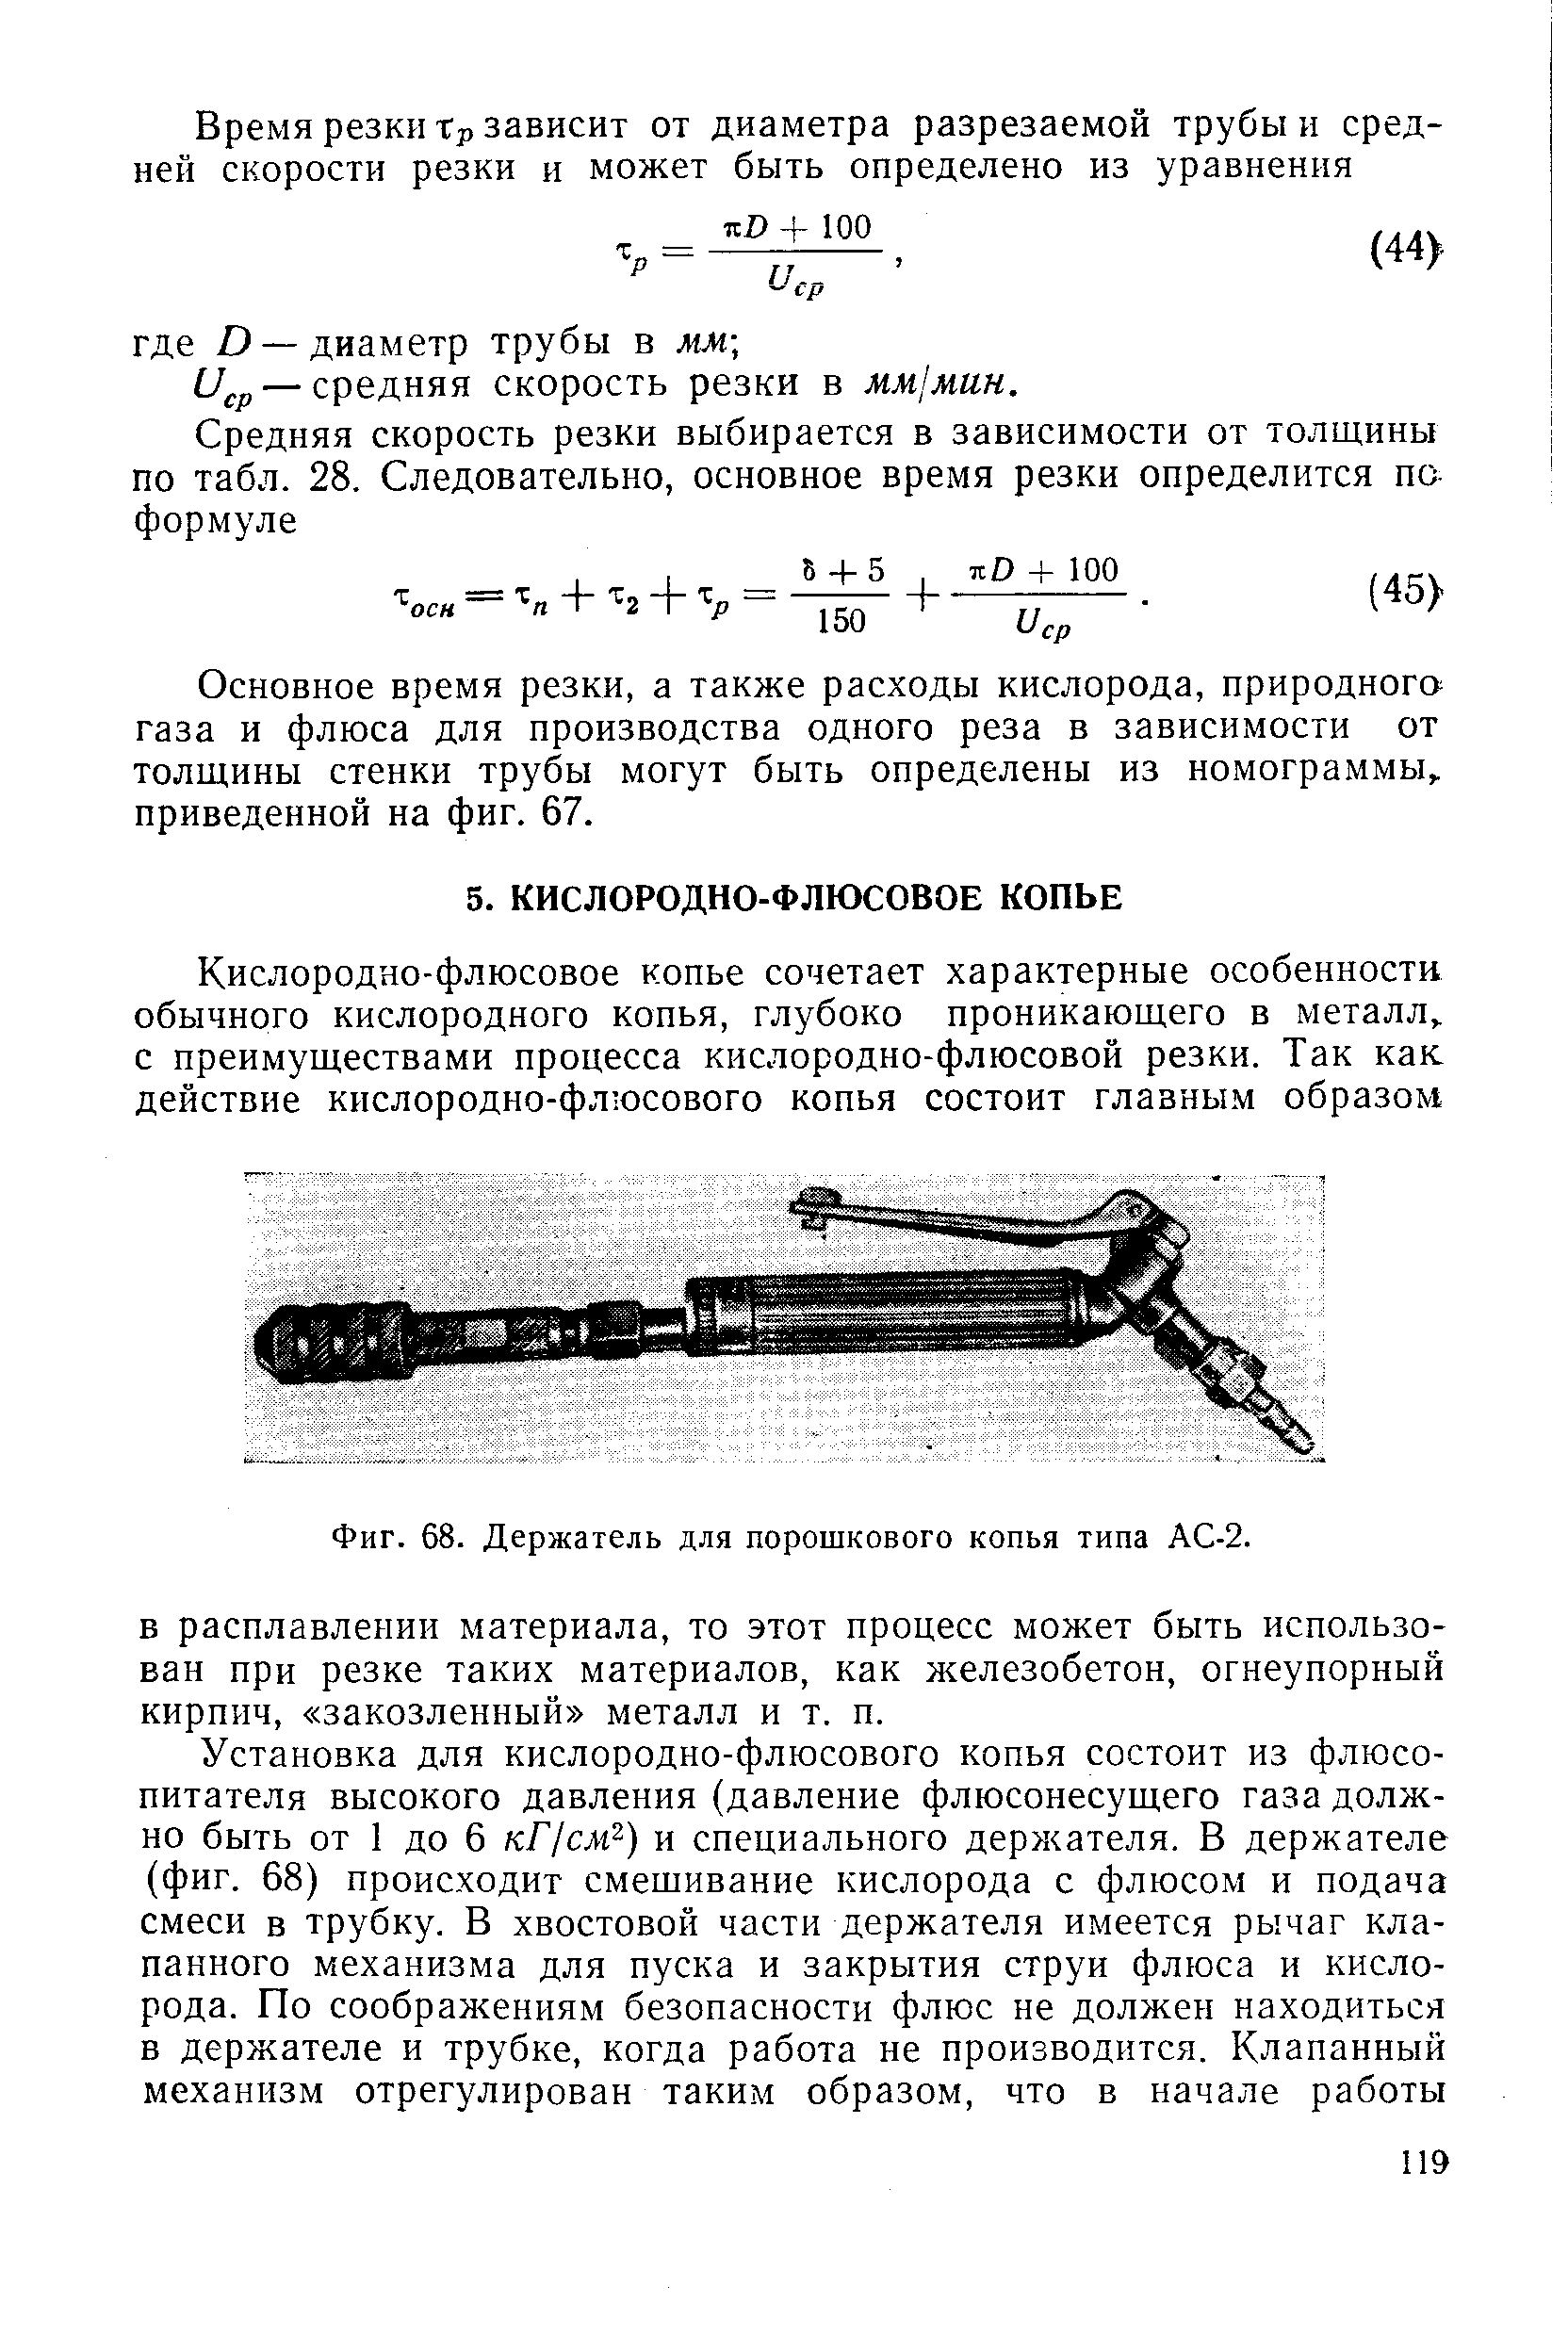 Фиг. 68. Держатель для порошкового копья типа АС-2.
